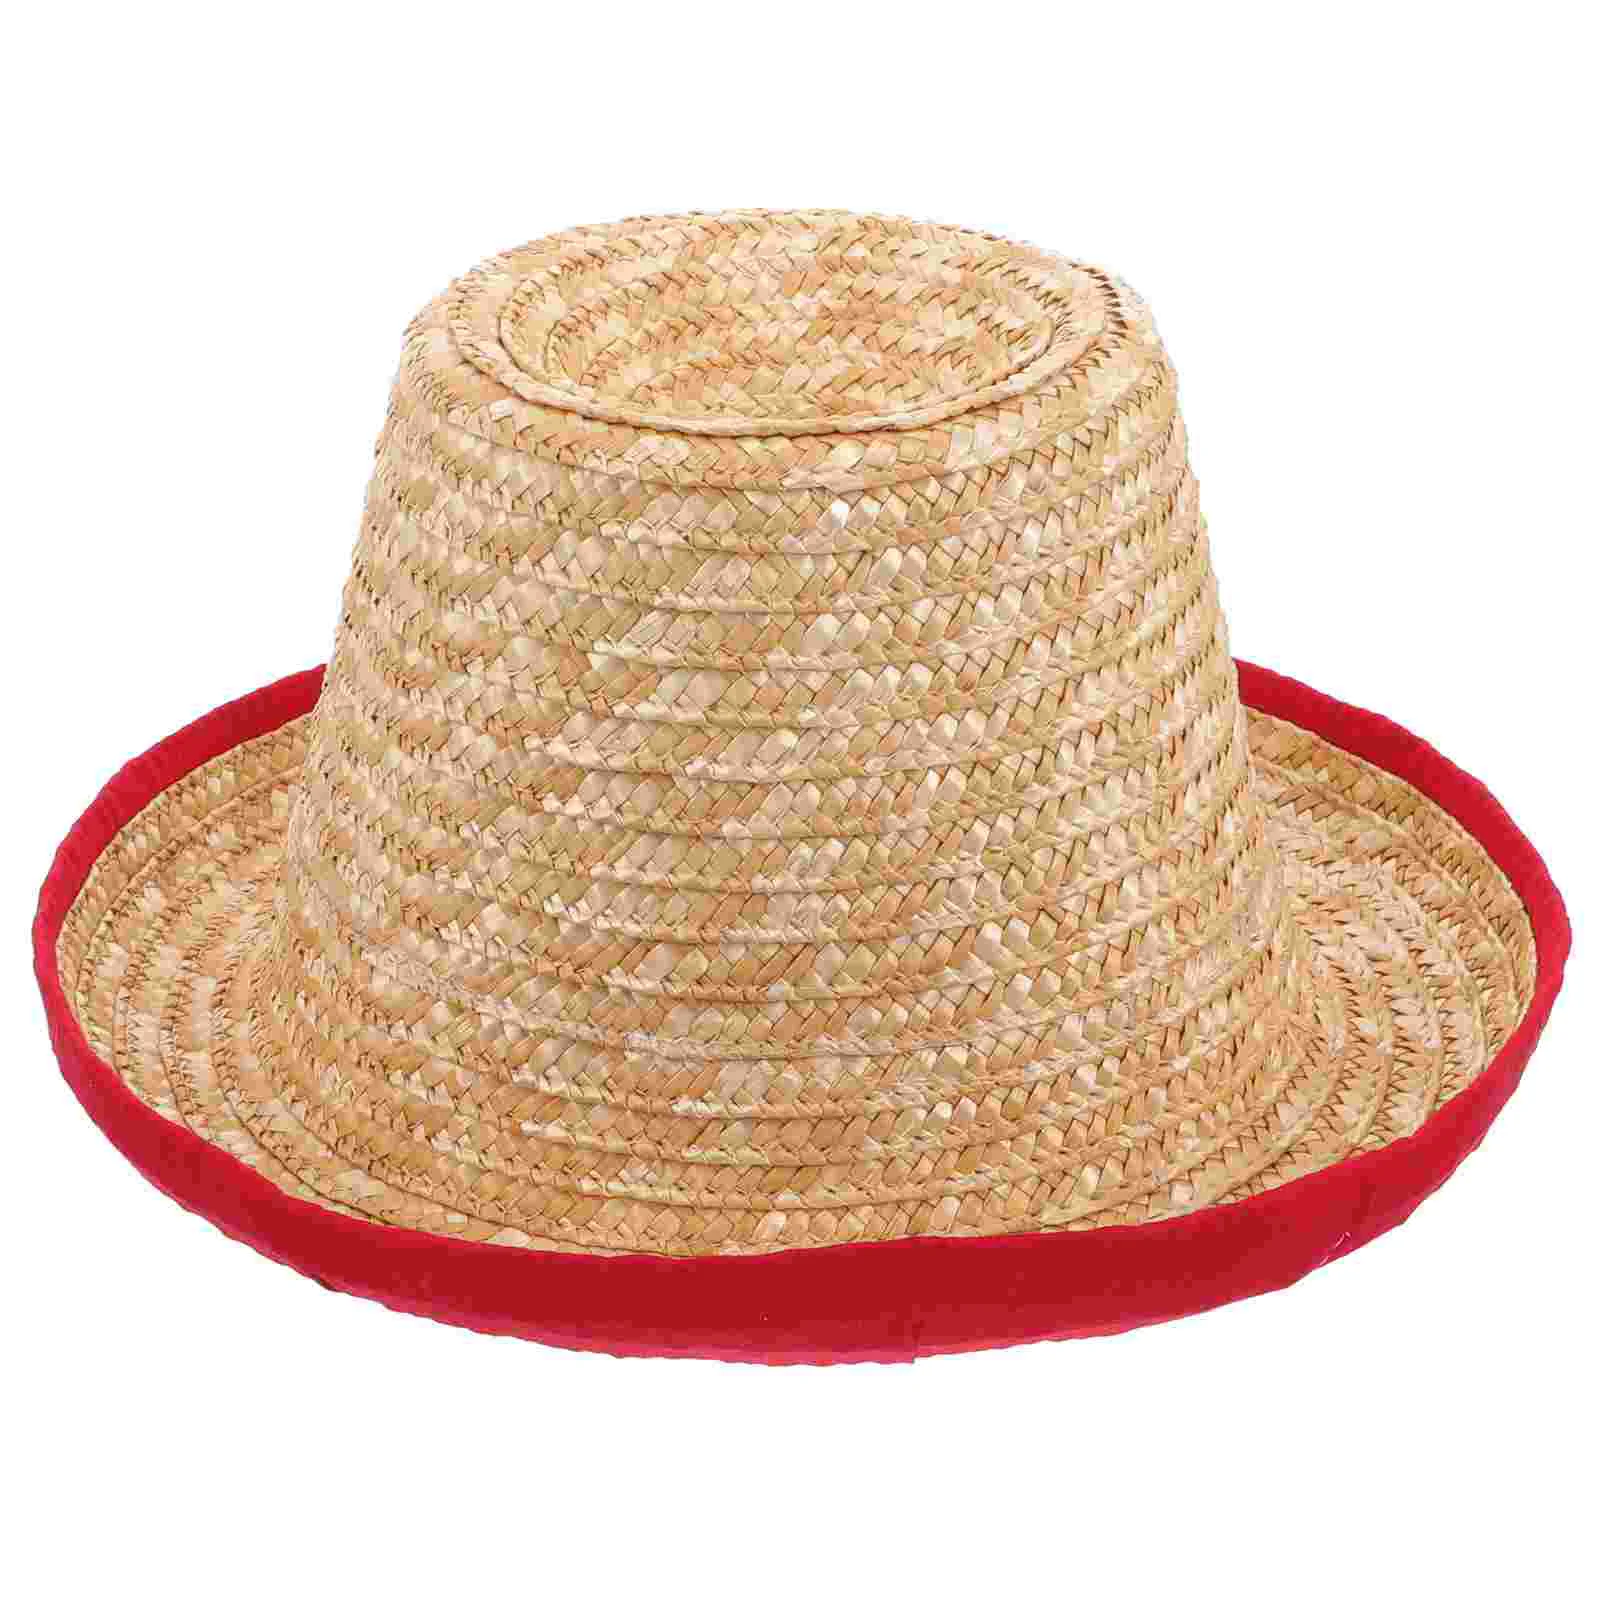 

Соломенная шляпа Sombrero Для Жонглирования, маленькая шляпа, цирковая шляпа, реквизит для специальных эффектов, смешное оформление